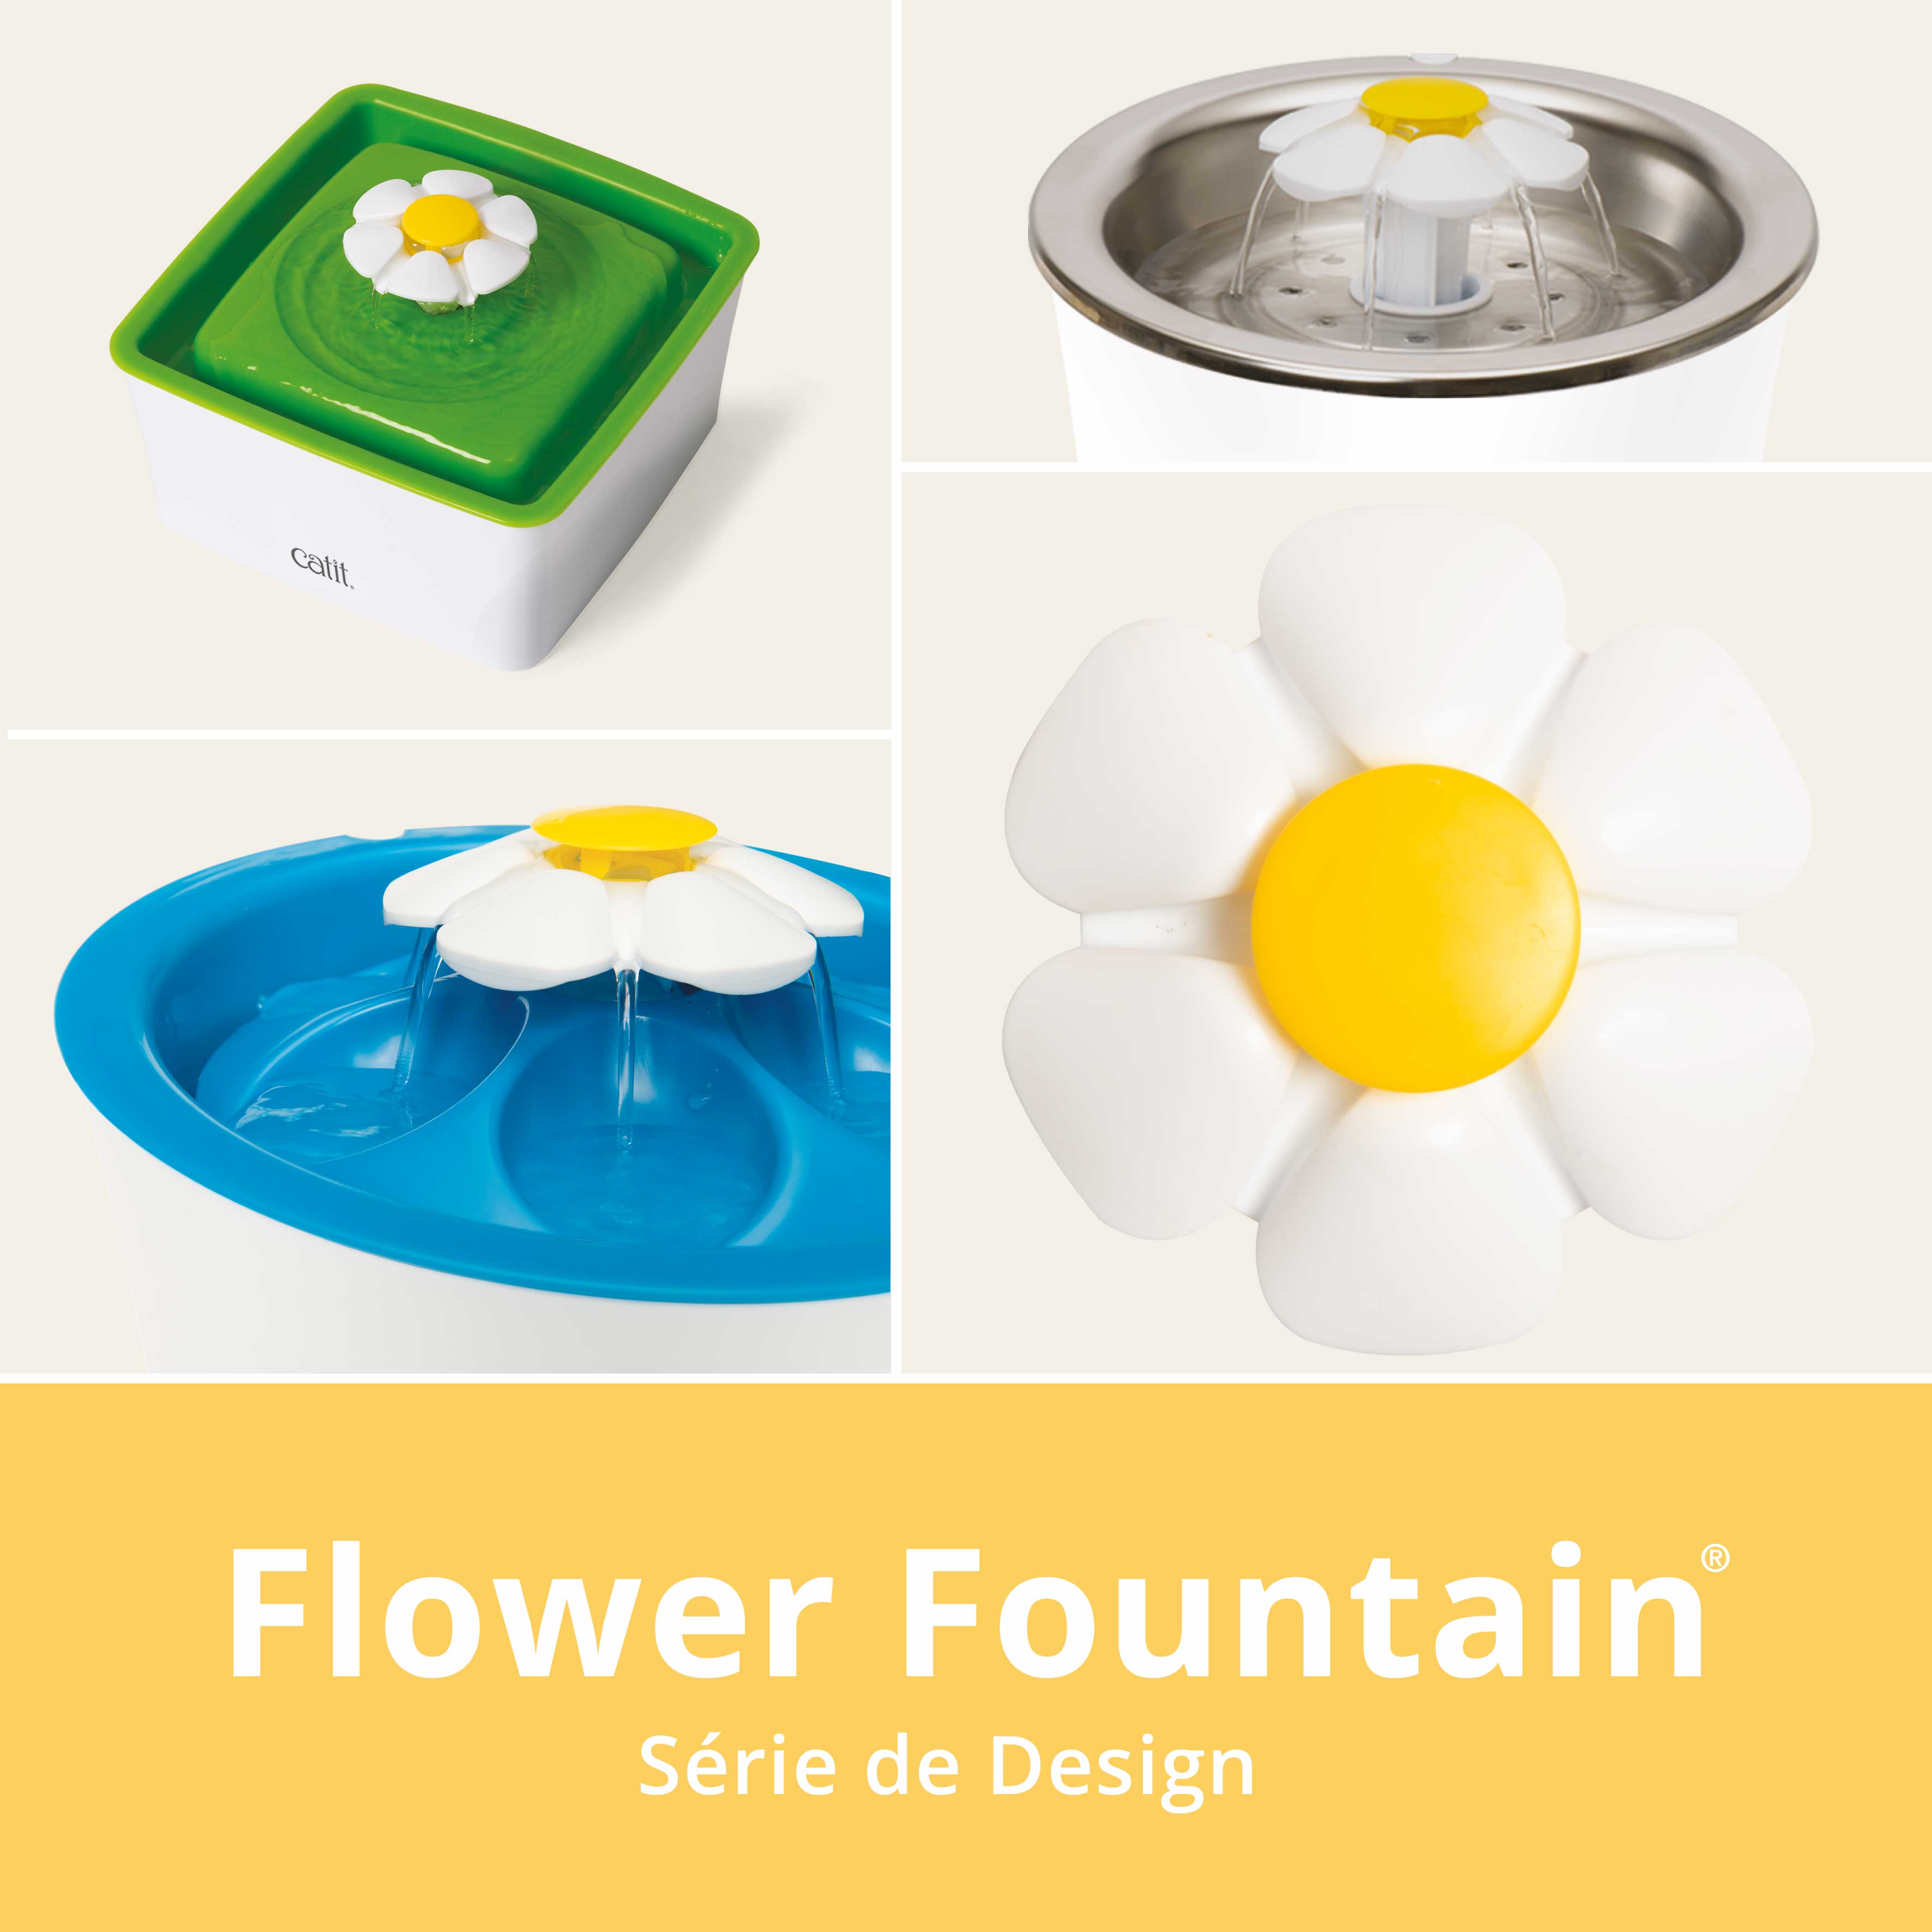 Série inteligente de Desenho Catit Flower Fountain